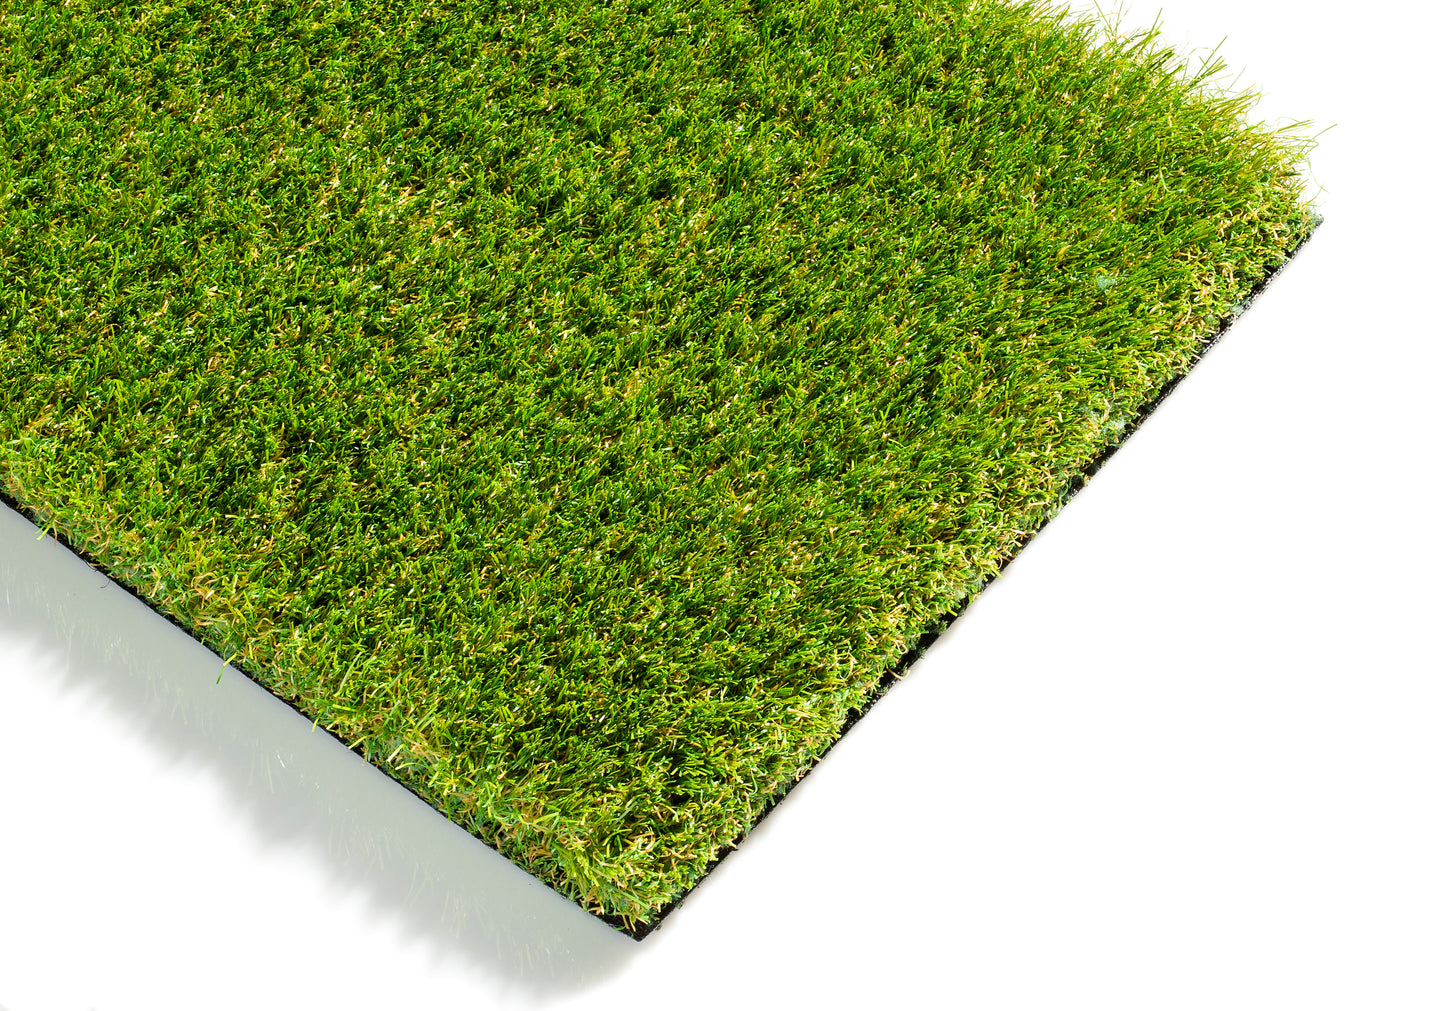 Eden 40mm Artificial Grass